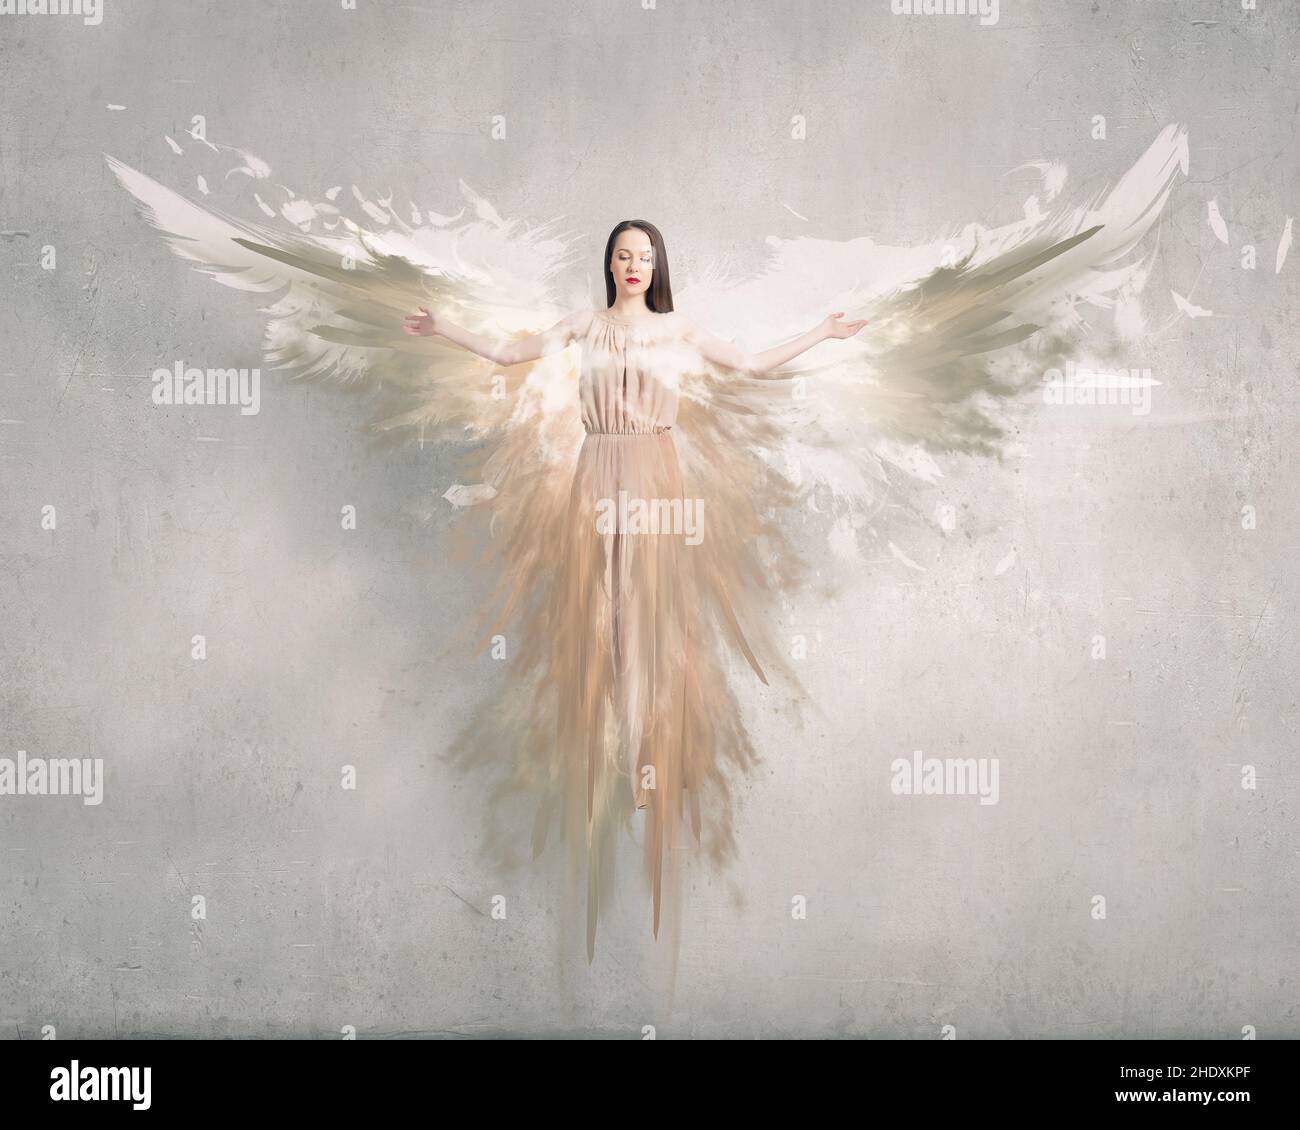 angel, guardian angel, angels, guardian angels Stock Photo